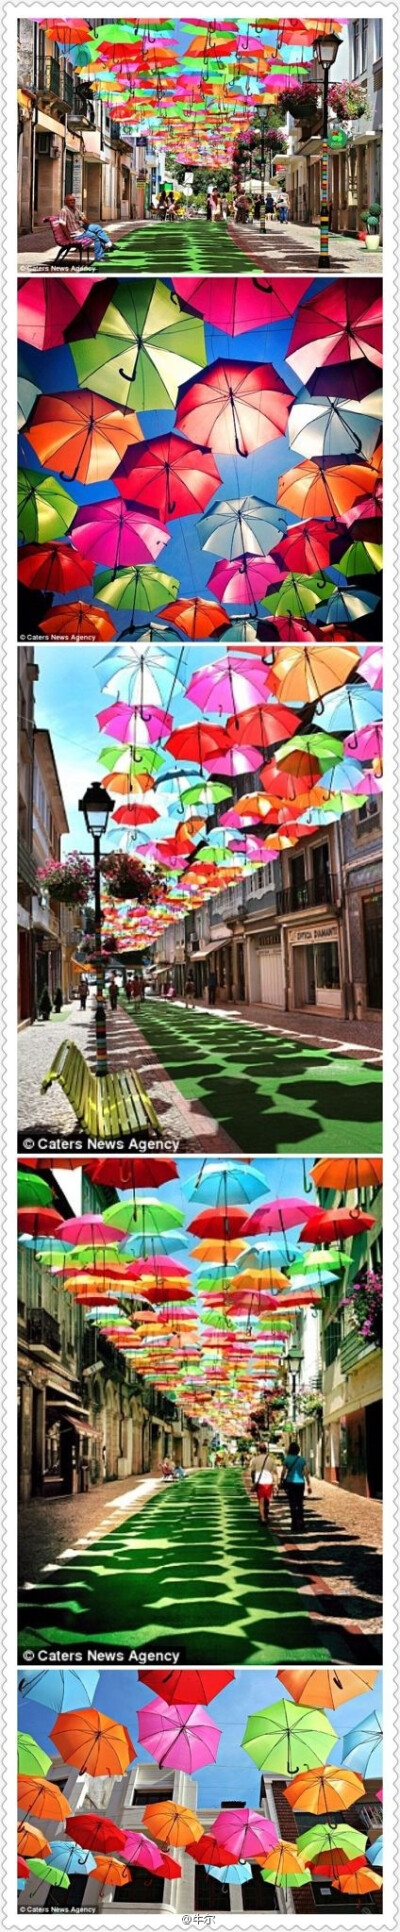 即使是阴暗的雨天，走在这些五颜六色的雨伞下，心情也会好起来！葡萄牙小镇Agueda 为了Agitagueda艺术节而创造的装置艺术。悬浮在半空中的雨伞，是在建筑物间用线穿引而造成的浮动雨伞的错觉。